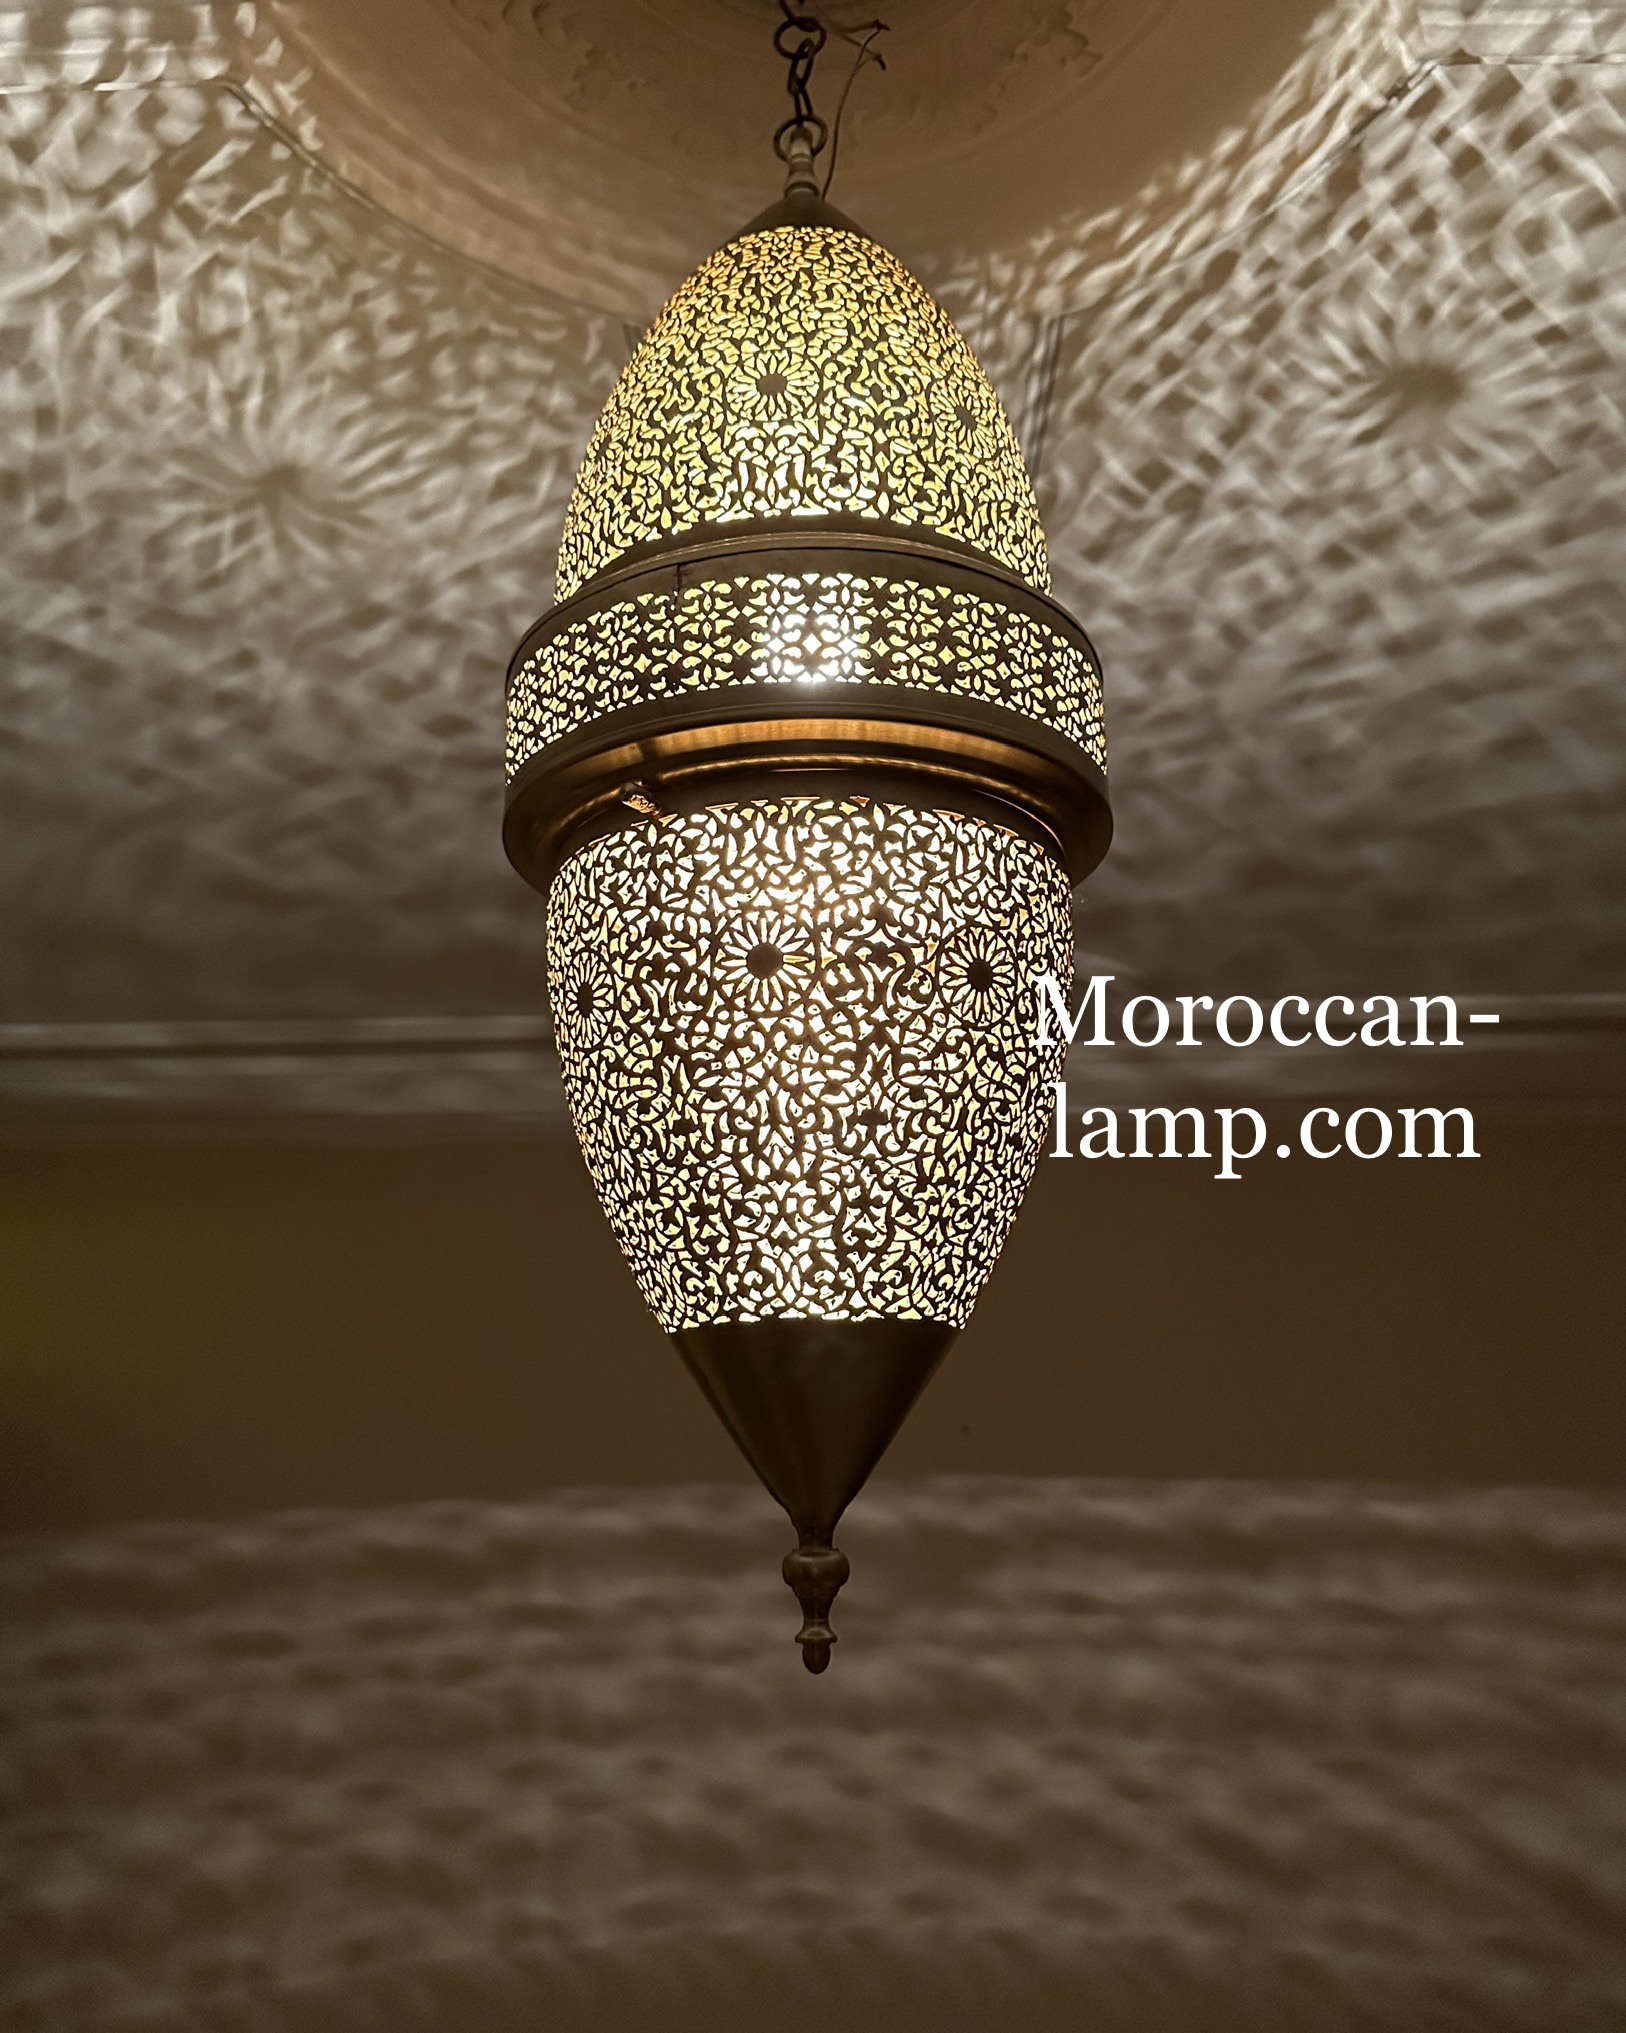 Lampes suspendues de style marocain - Éclairage de lampe suspendue en laiton